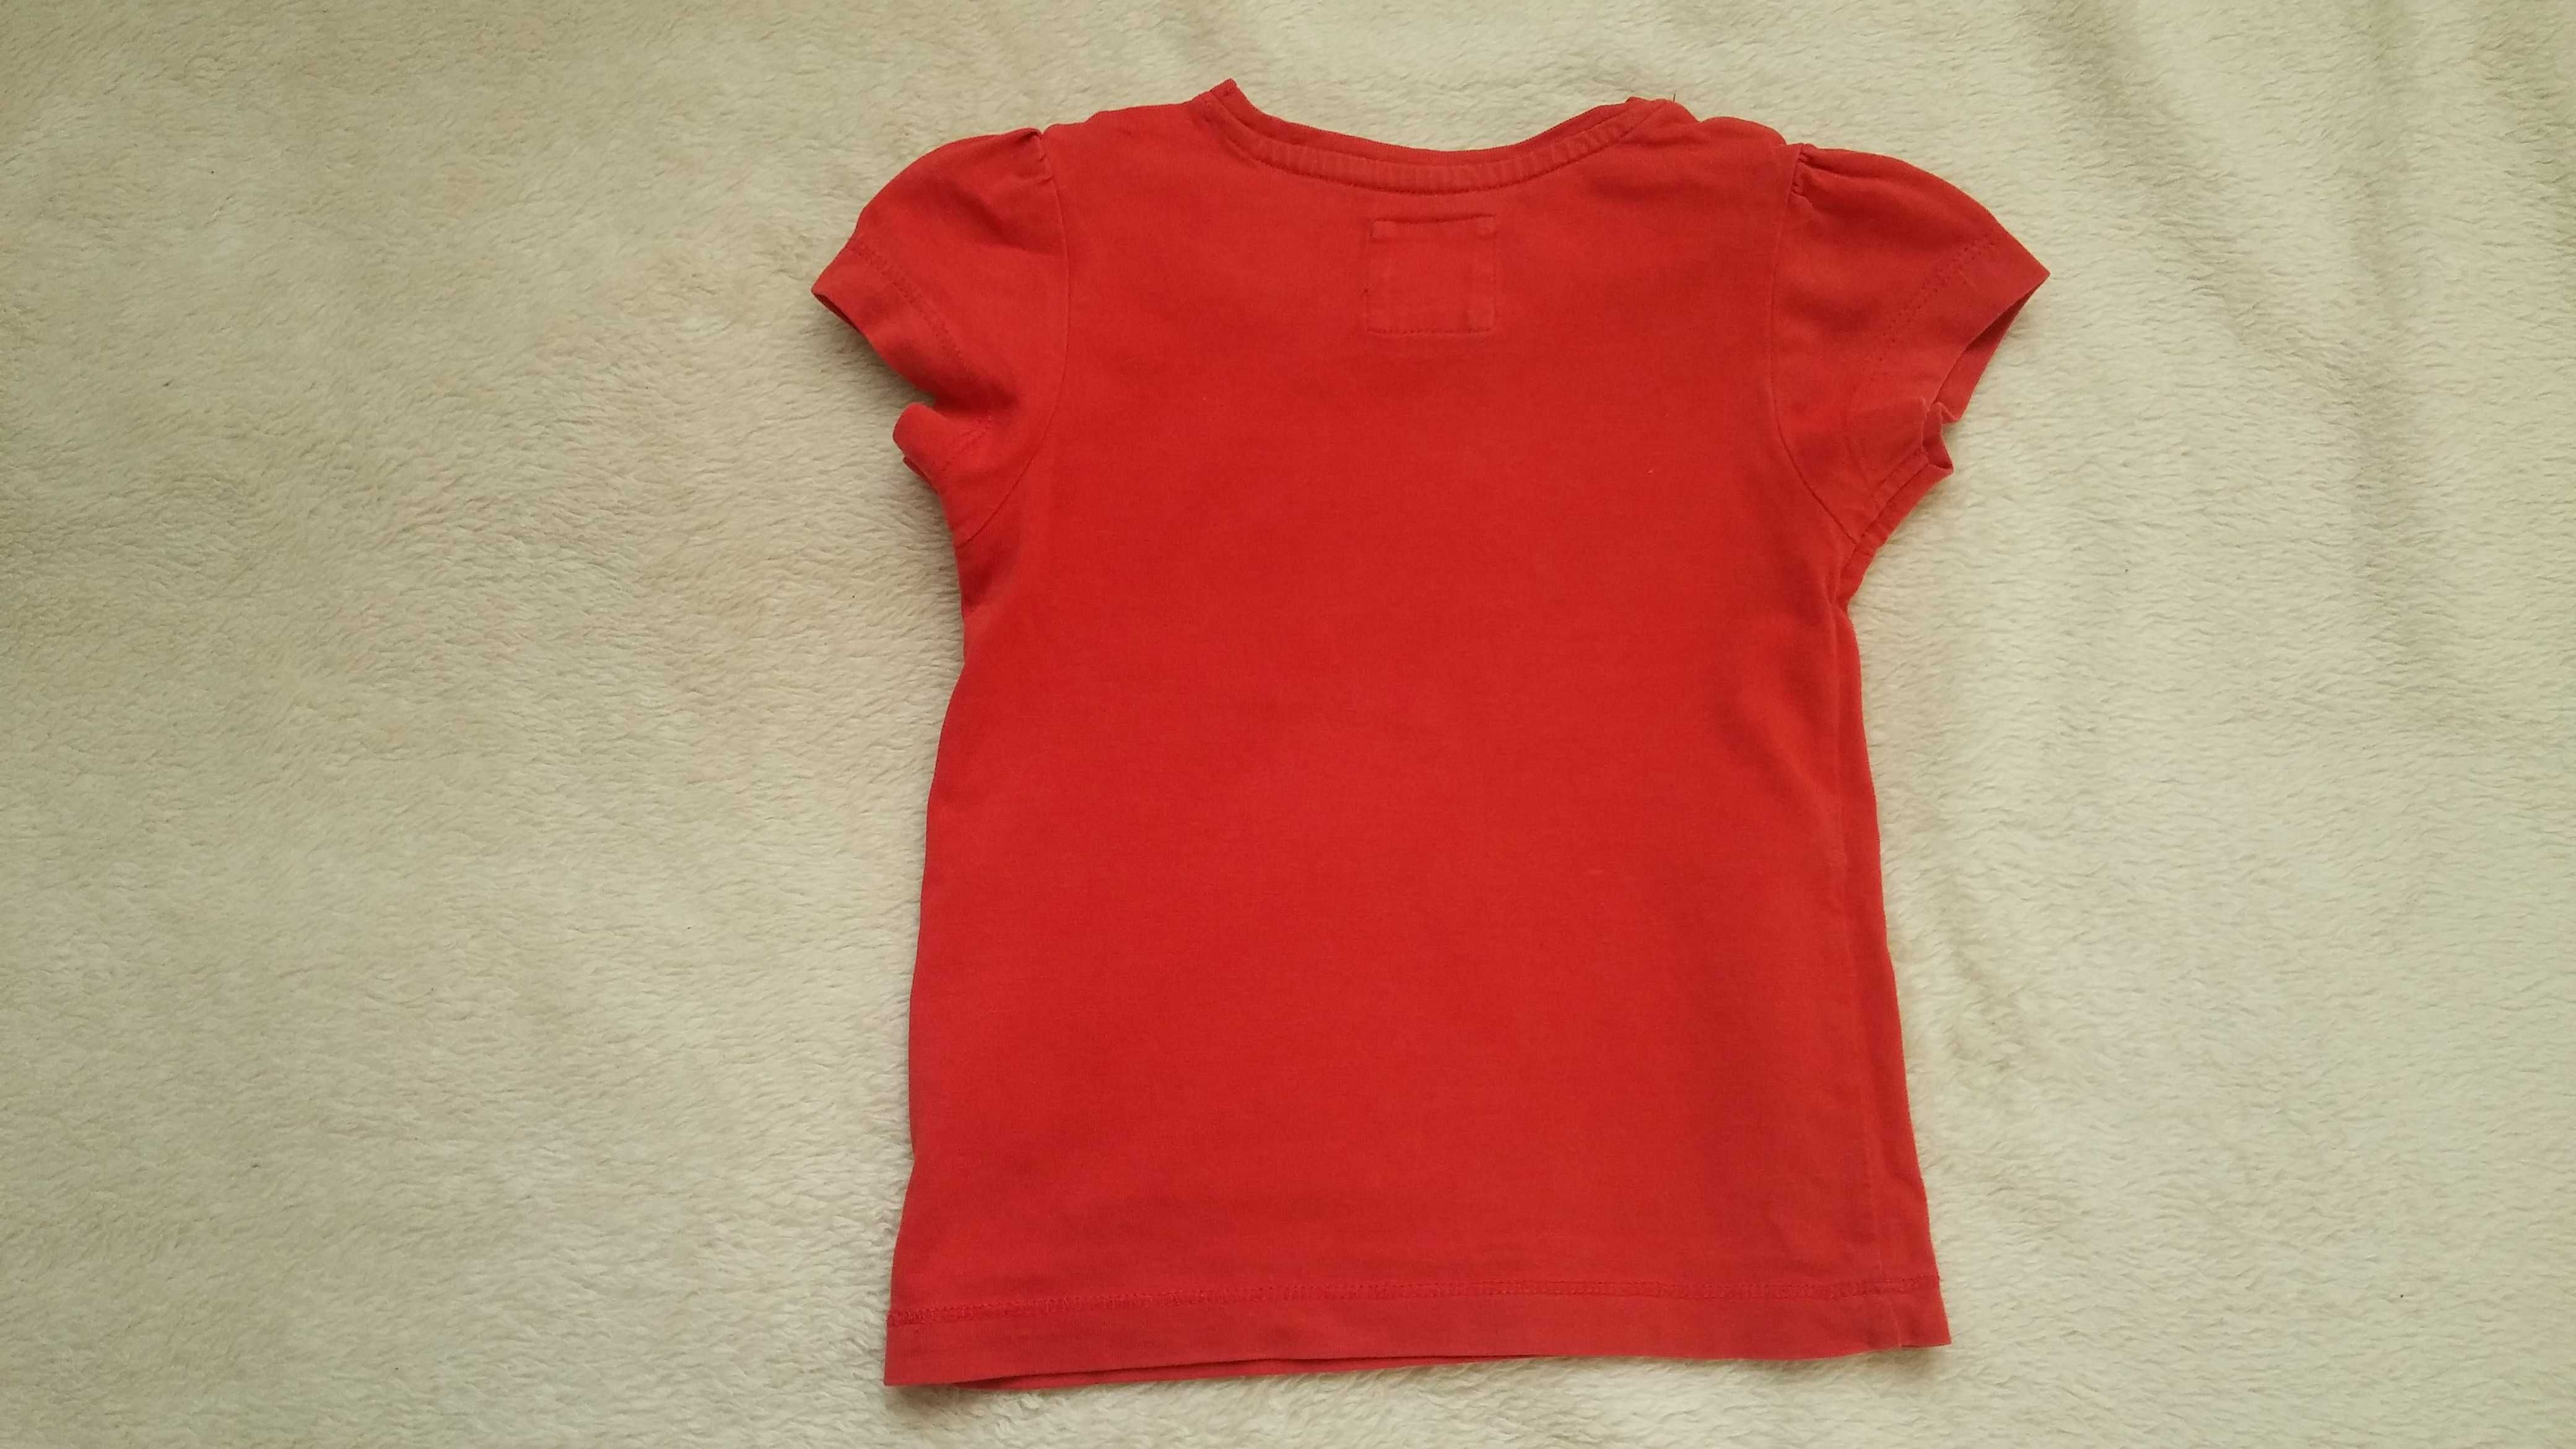 czerwona bluzka 74 - 80 na 9 - 12 miesięcy